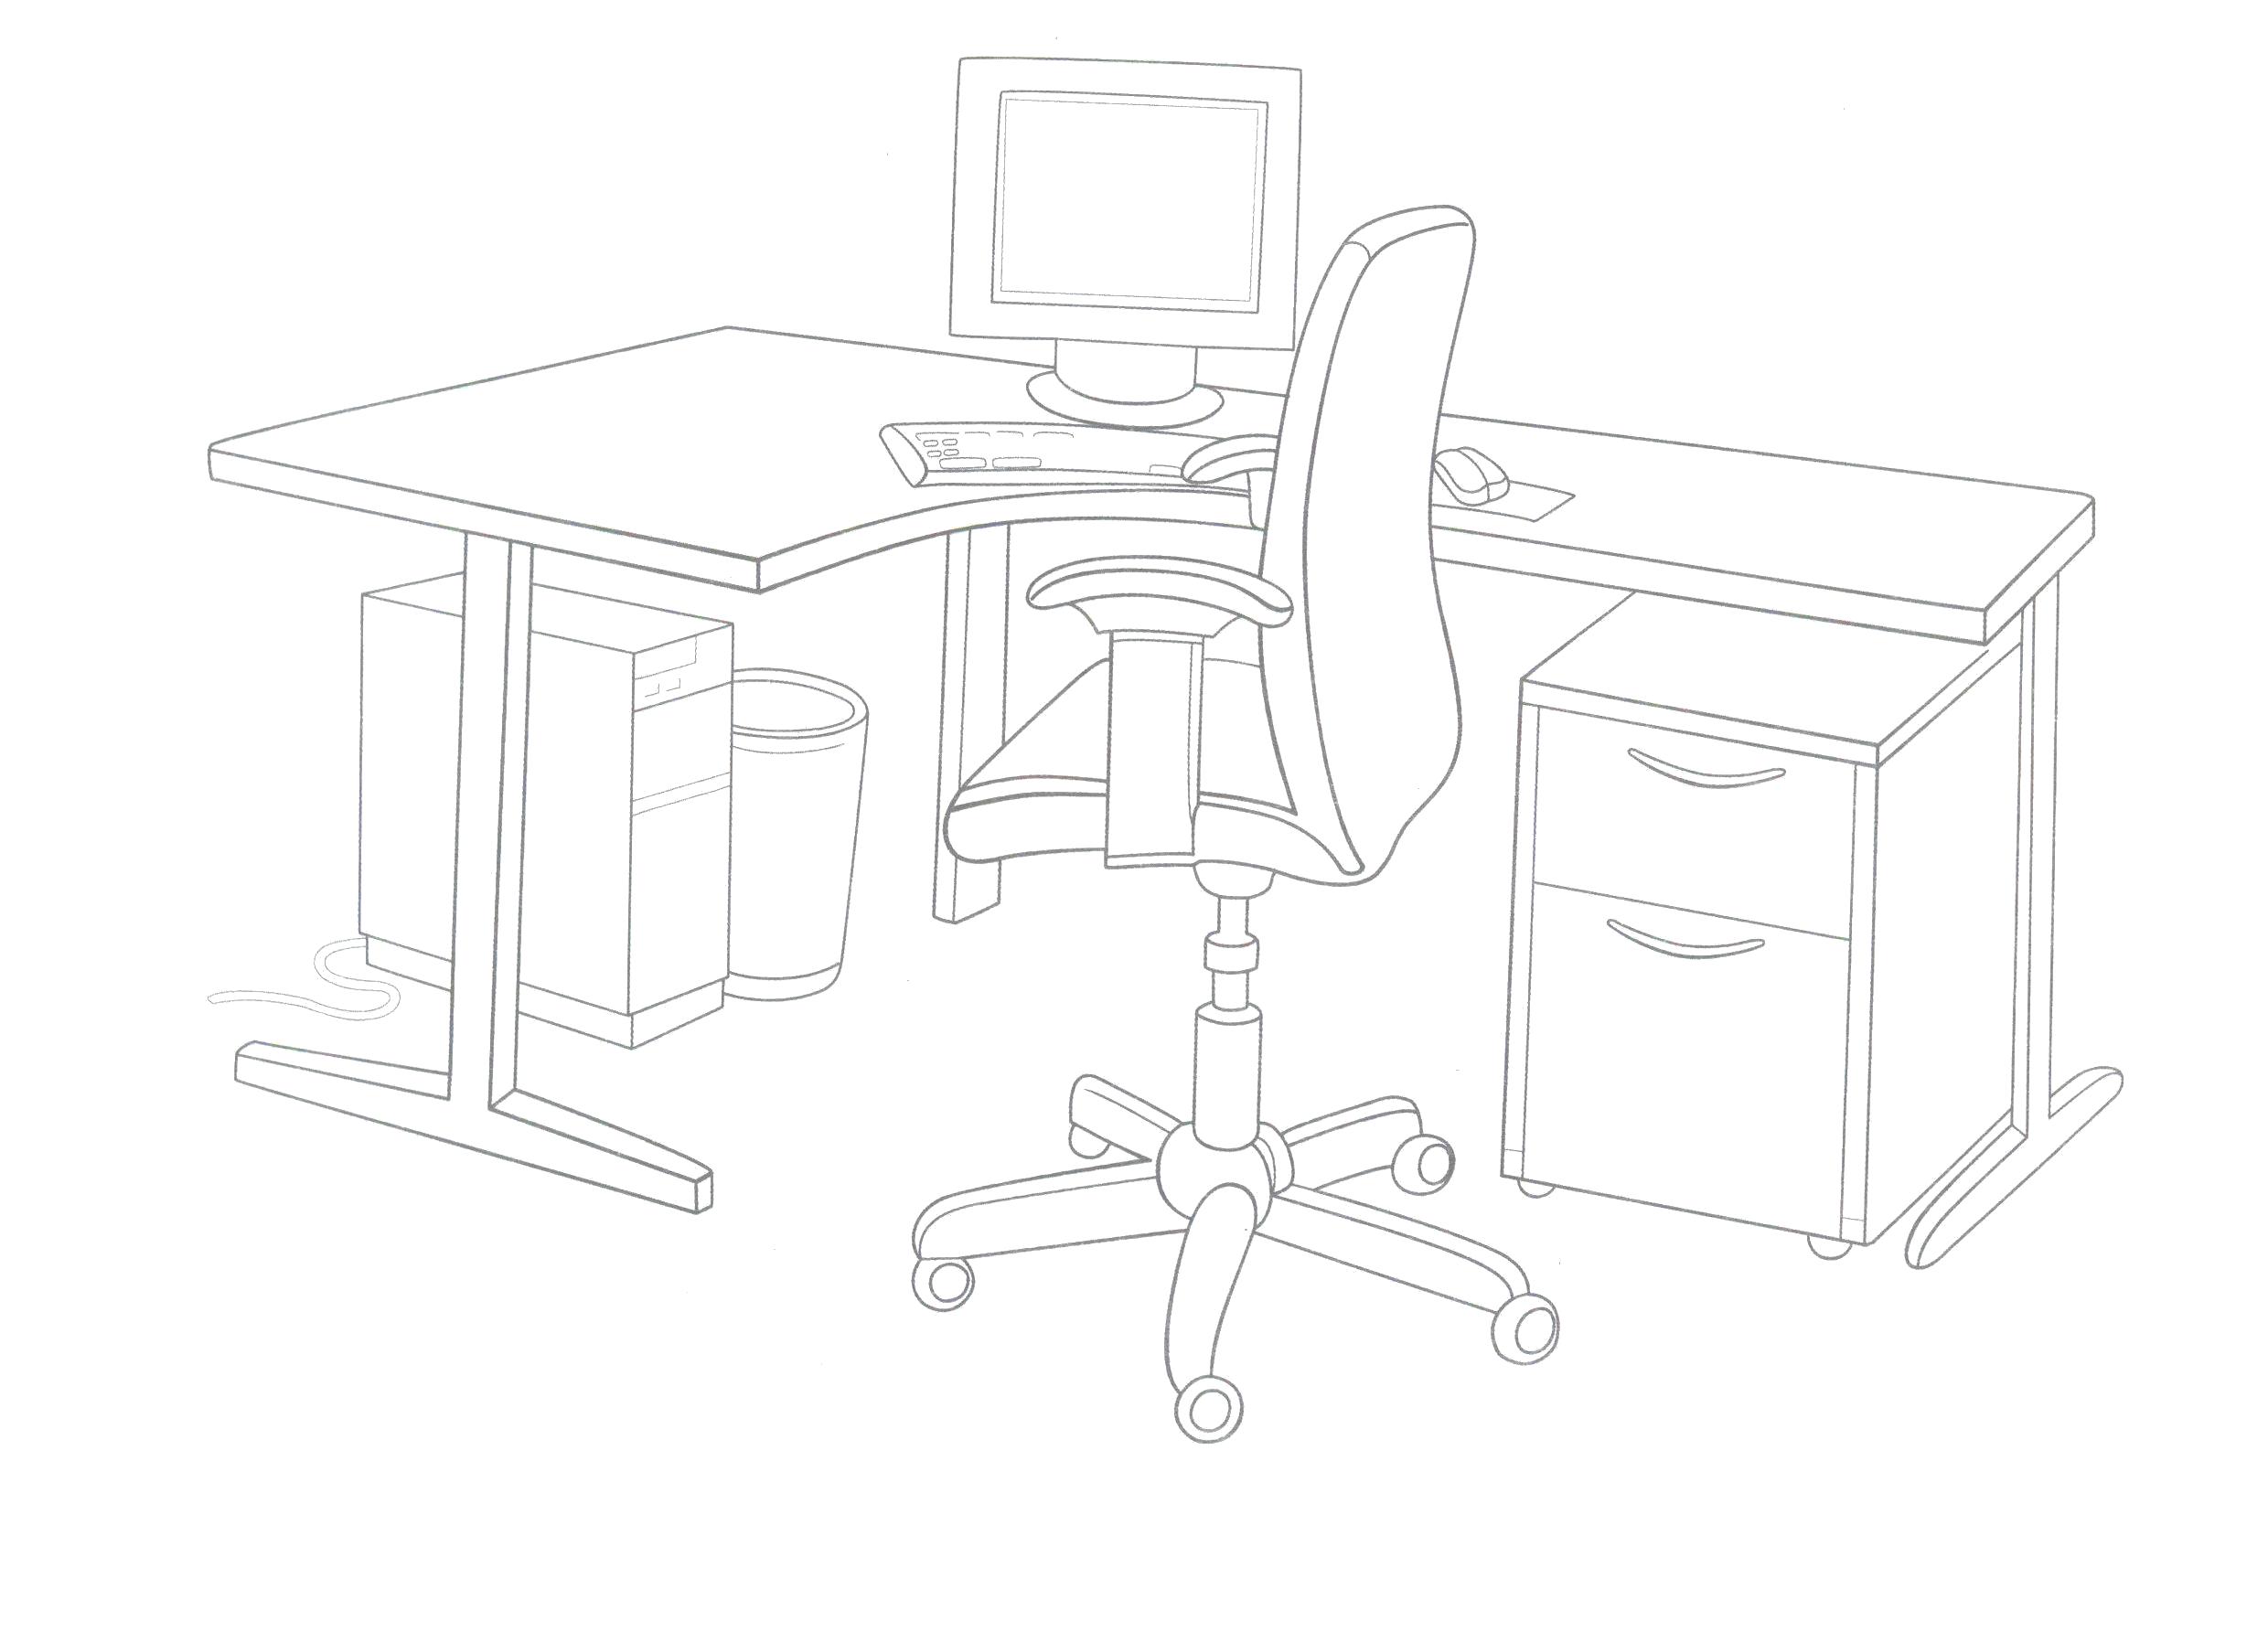 Название: Раскраска Прикрепленное изображение. компьютерный стол со стулом. Категория: мебель. Теги: мебель.